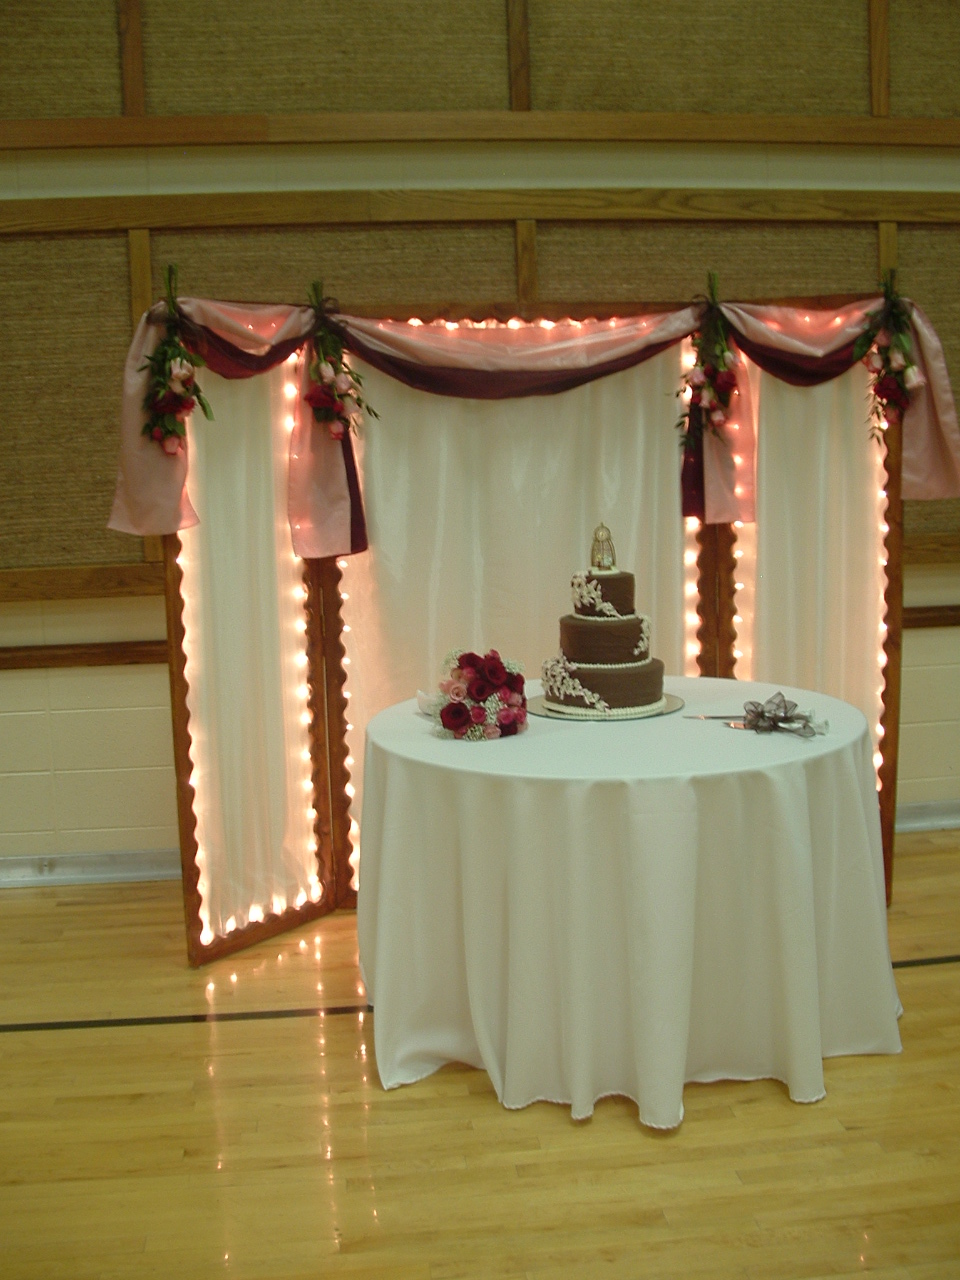 the wedding cake backdrop